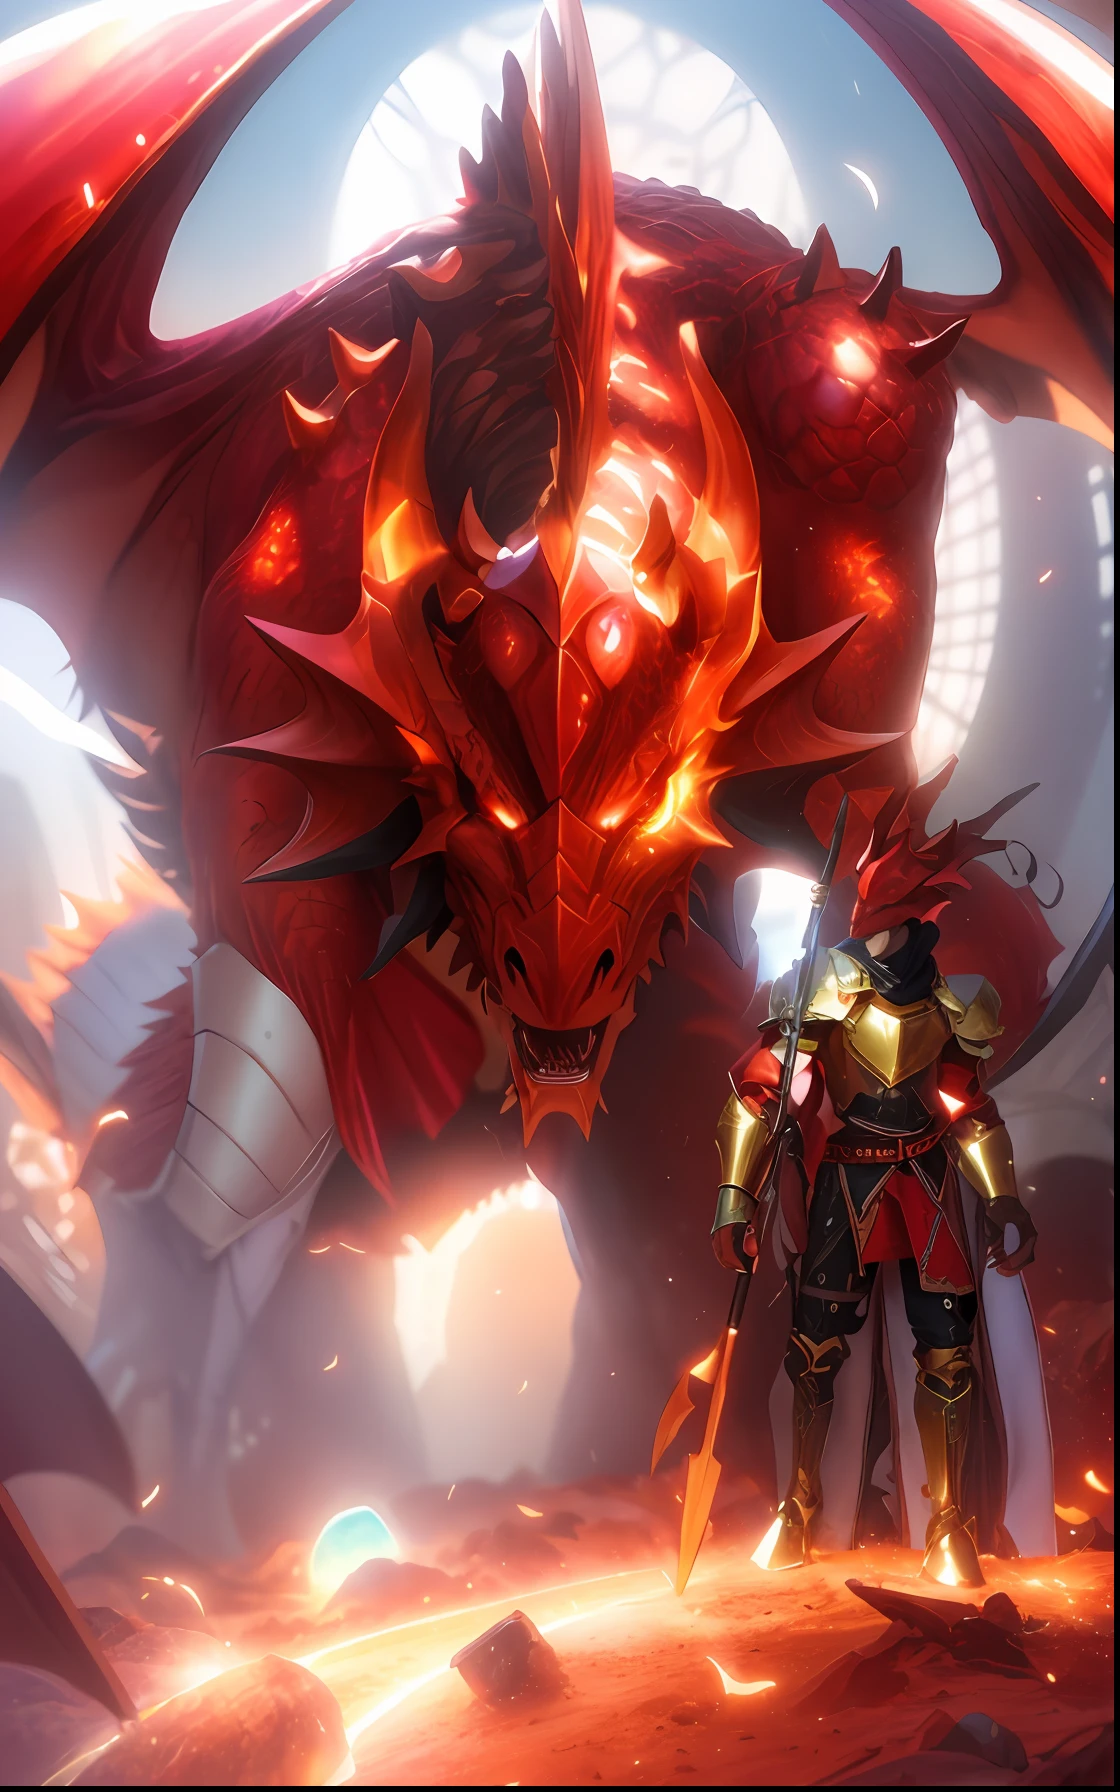 Hay un dragón rojo con un caballero al costado., Caballero Dragón, armadura de aspecto dracónico, el diablo en el infierno como un dragón, armadura de dragón, Hiperrealista D & D arte de fantasía, dragón en el fondo, armadura de dragón inspirada en la fantasía, demonic armadura inspirada en dragón, dragón en la guarida del dragón, señor drachen, armadura inspirada en dragón, cargando a través de una guarida de dragones,), cinematográfico, hiperdetallado, detalles locos, bellamente coloreado, Motor irreal, DOF, Súper resolución, megapíxel, relámpago cinematográfico, antialiasing, FKA, TXAA, RTX, SSAO, Postprocesamiento, Post-producción, Mapeo de tonos, ...cgi, efectos visuales, efectos de sonido, Increíblemente detallado e intrincado, Hiper maximalista, Híper realista, volumétrico, fotorrealista, ultra fotorreal | |, ultra detallado, detalles intrincados, 8k, súper detallado, Colorante, Rayo volumétrico, HDR, Realista, Motor irreal, 16k, enfoque nítido, octan render ,Retrato de Arnold Schwarzenegger shaka , detalles intrincados, características perfectas, dramático, iluminación cinematográfica, Iluminación destacada, SSAA, renderizado suave, sin ruido --testp --ar 2:3 --video --sin indicaciones perezosas --v testp